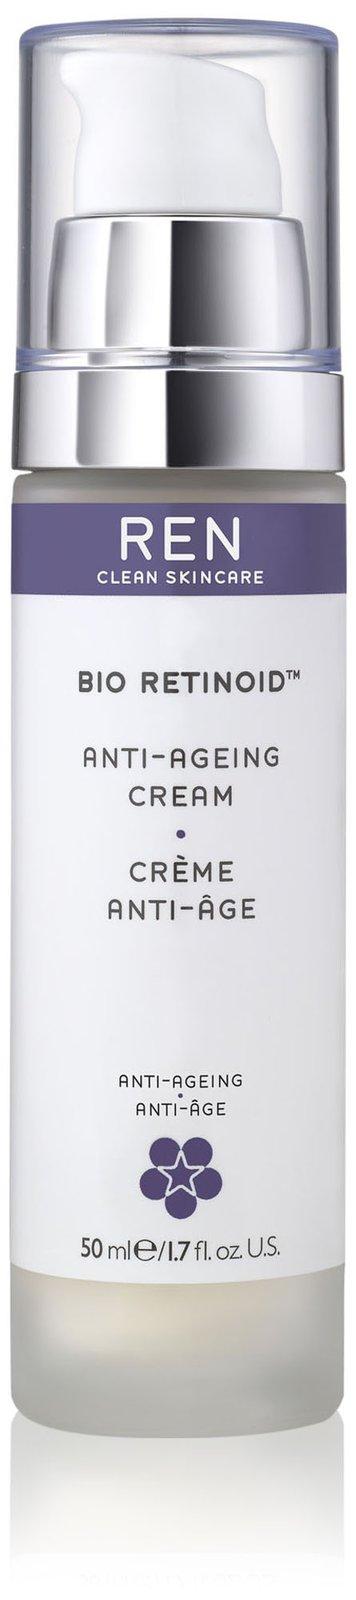 Ren Anti-ageing Cream